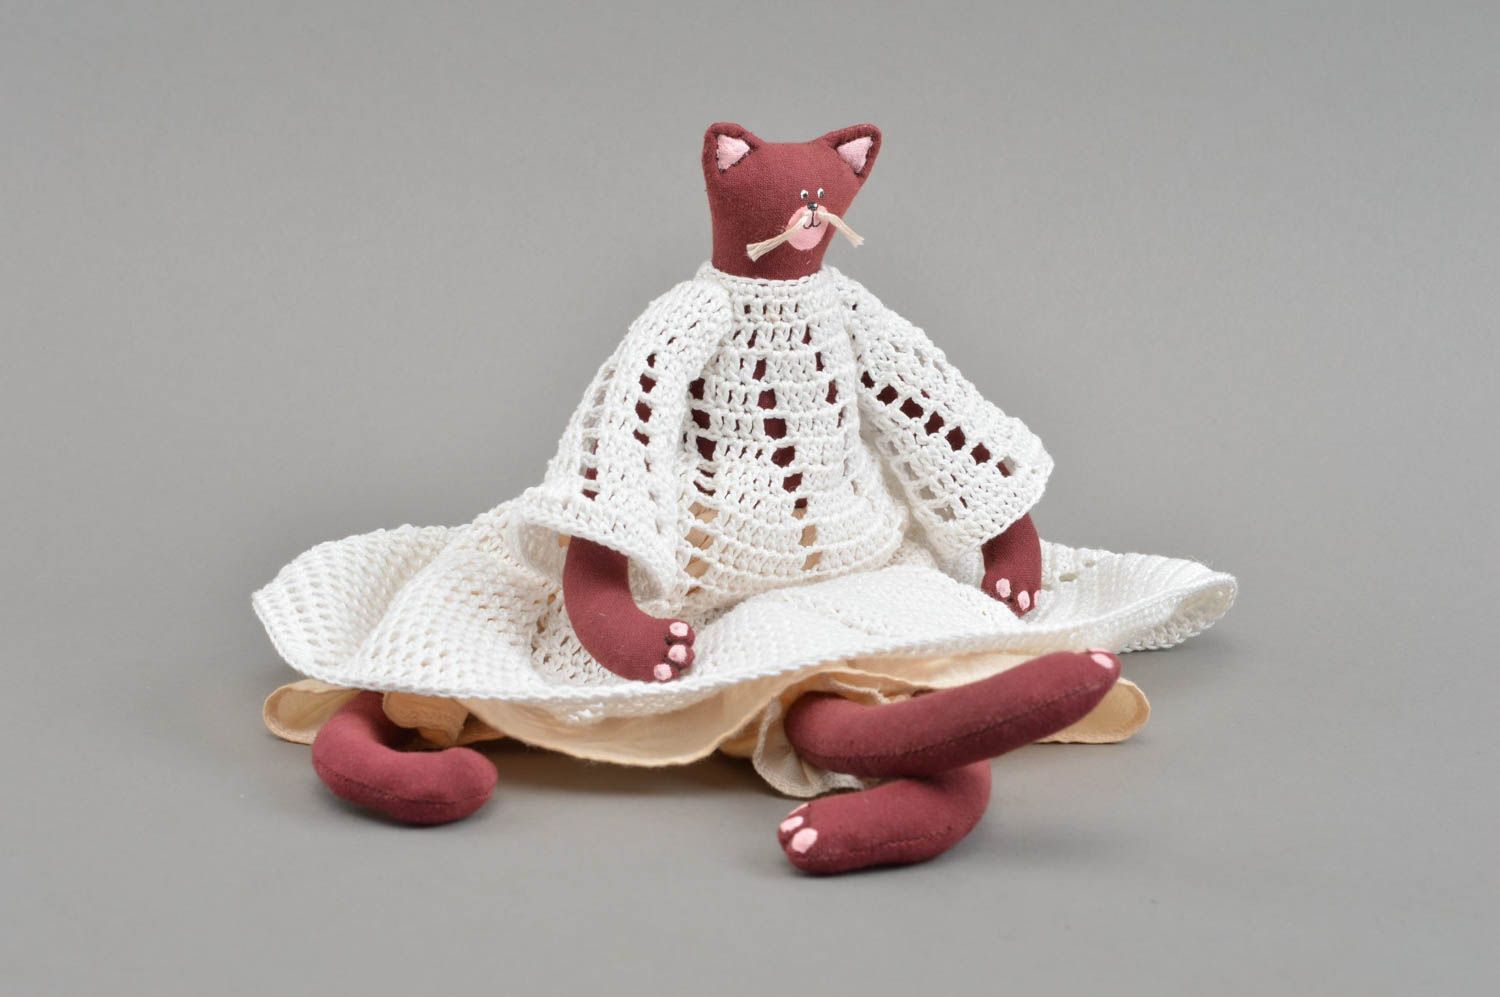 Textil Kuscheltier Katze bordeauxrot im gehäkelten Kleid klein schön handmade foto 4